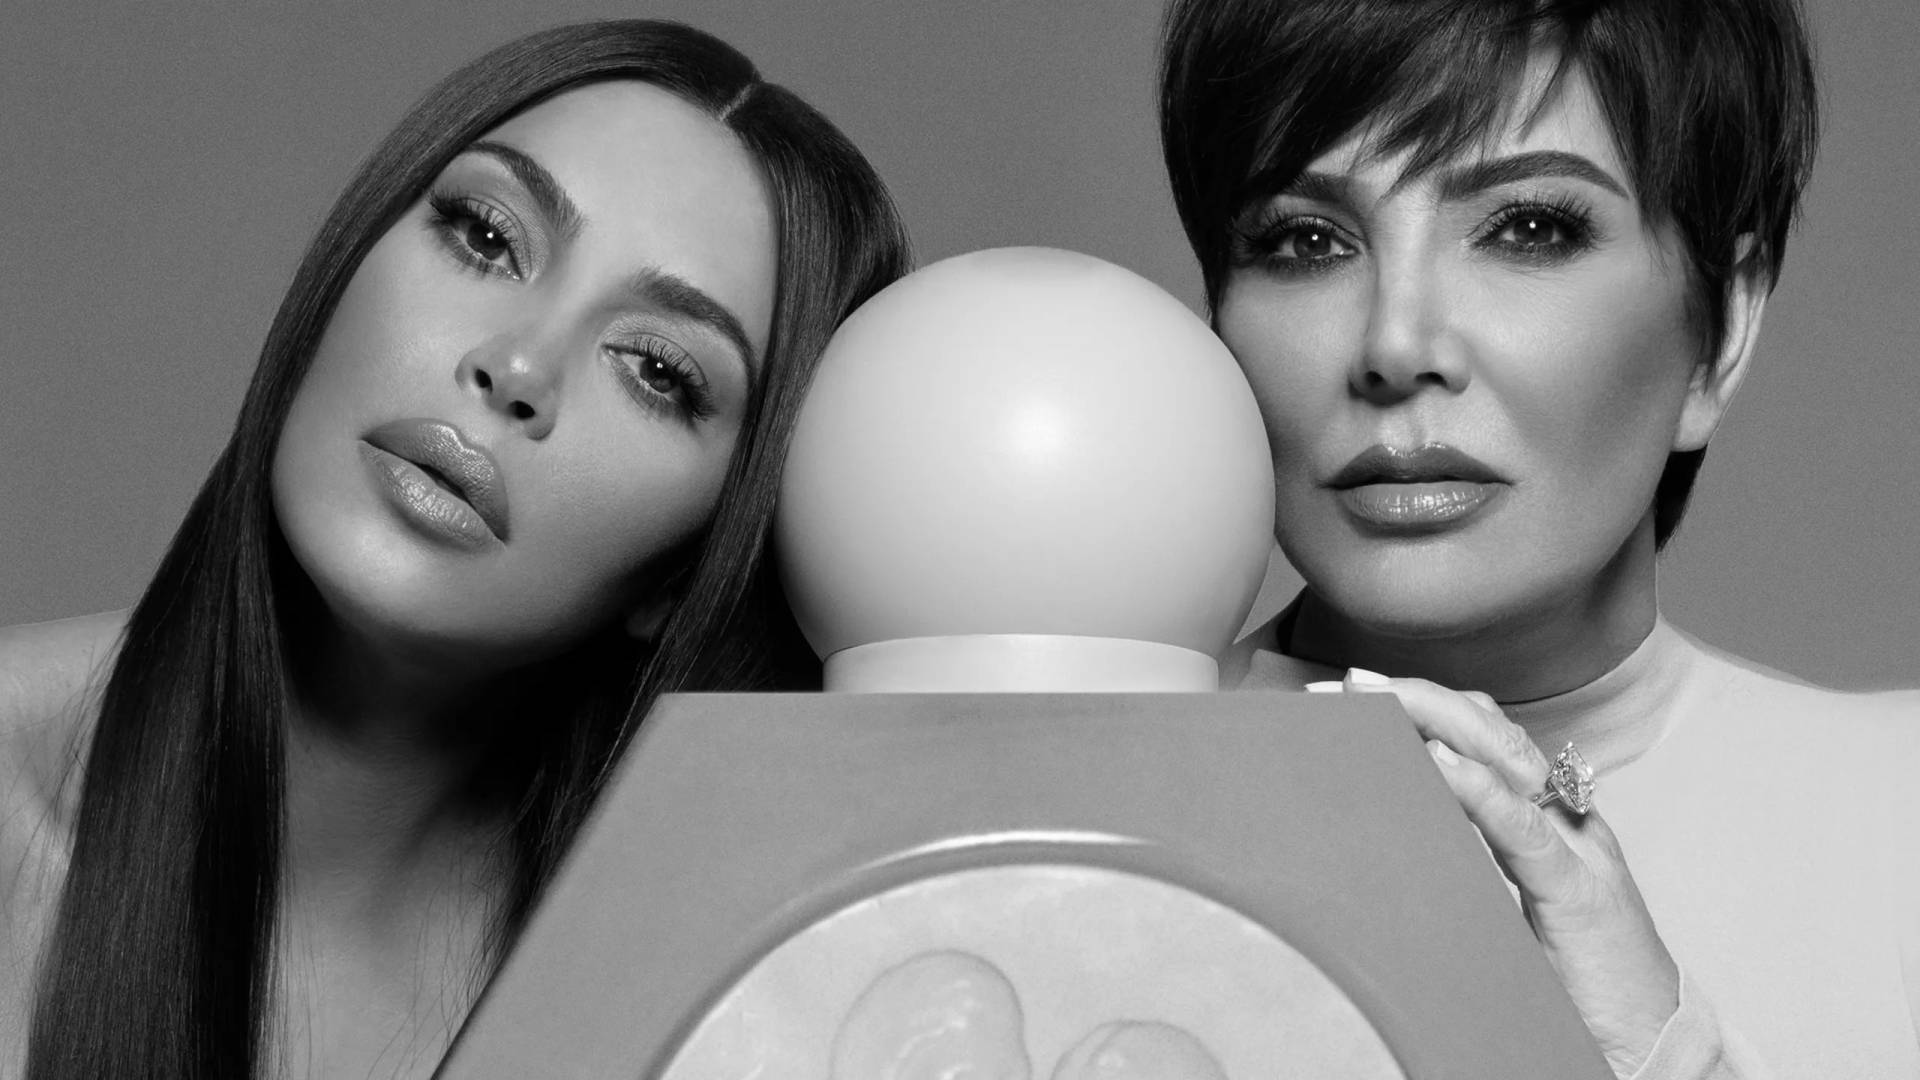 Kardashianmamma Och Dotterparfymserien - Kardashian Mother Och Daughter Perfume Line Wallpaper